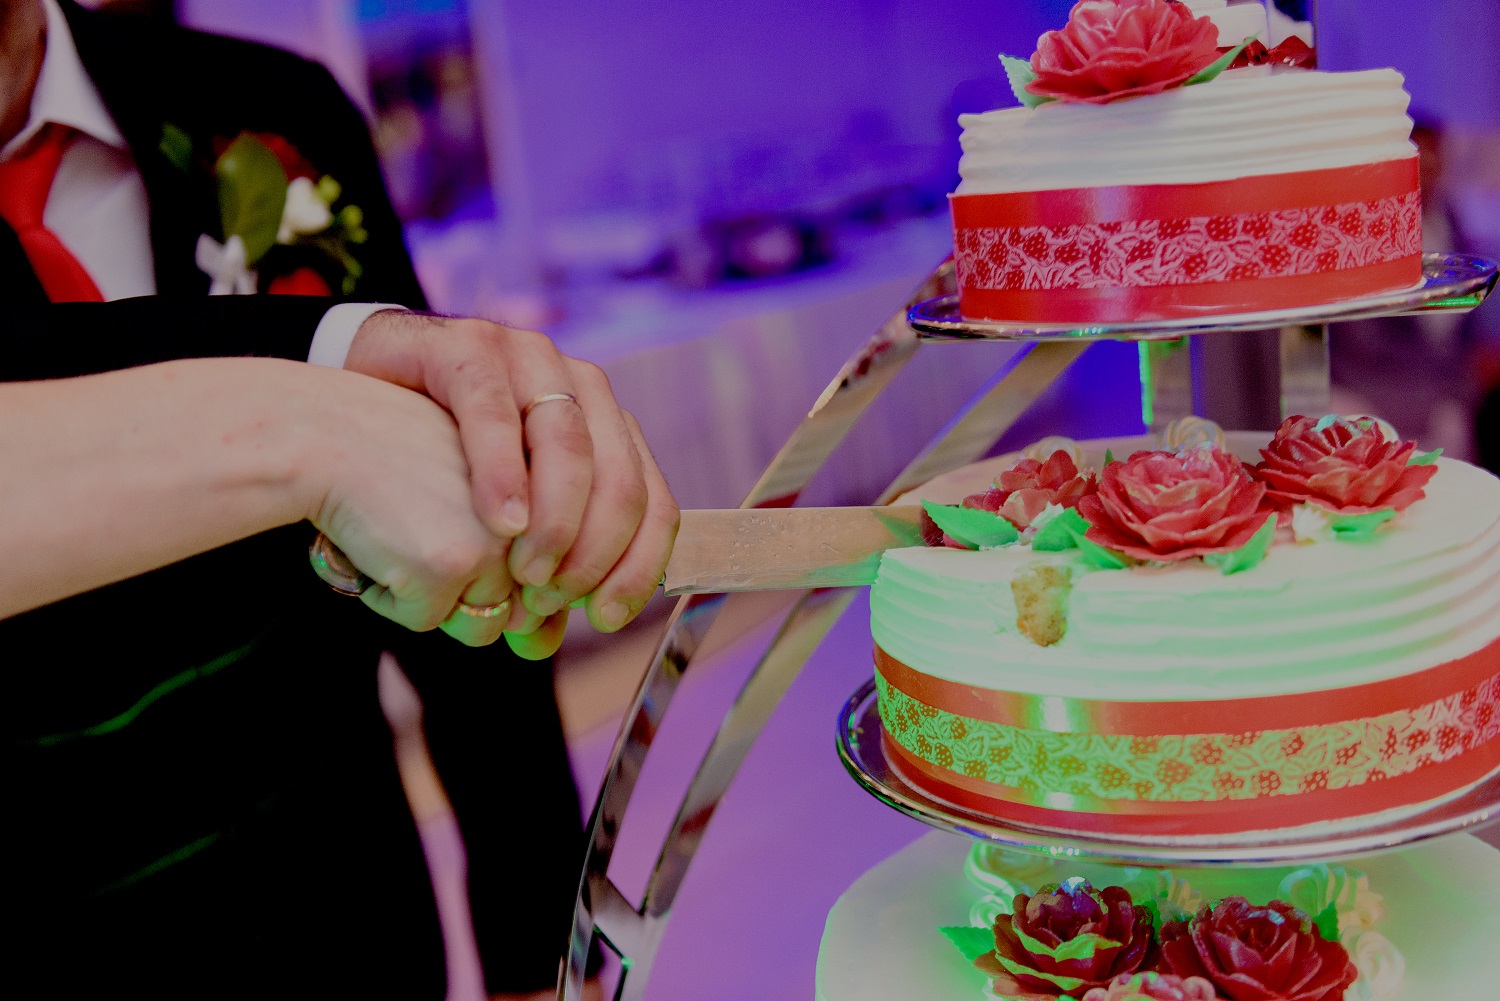 Para młoda kroi tort weselny - pani młoda trzyma nóż, a pan młody obejmuje jej dłoń